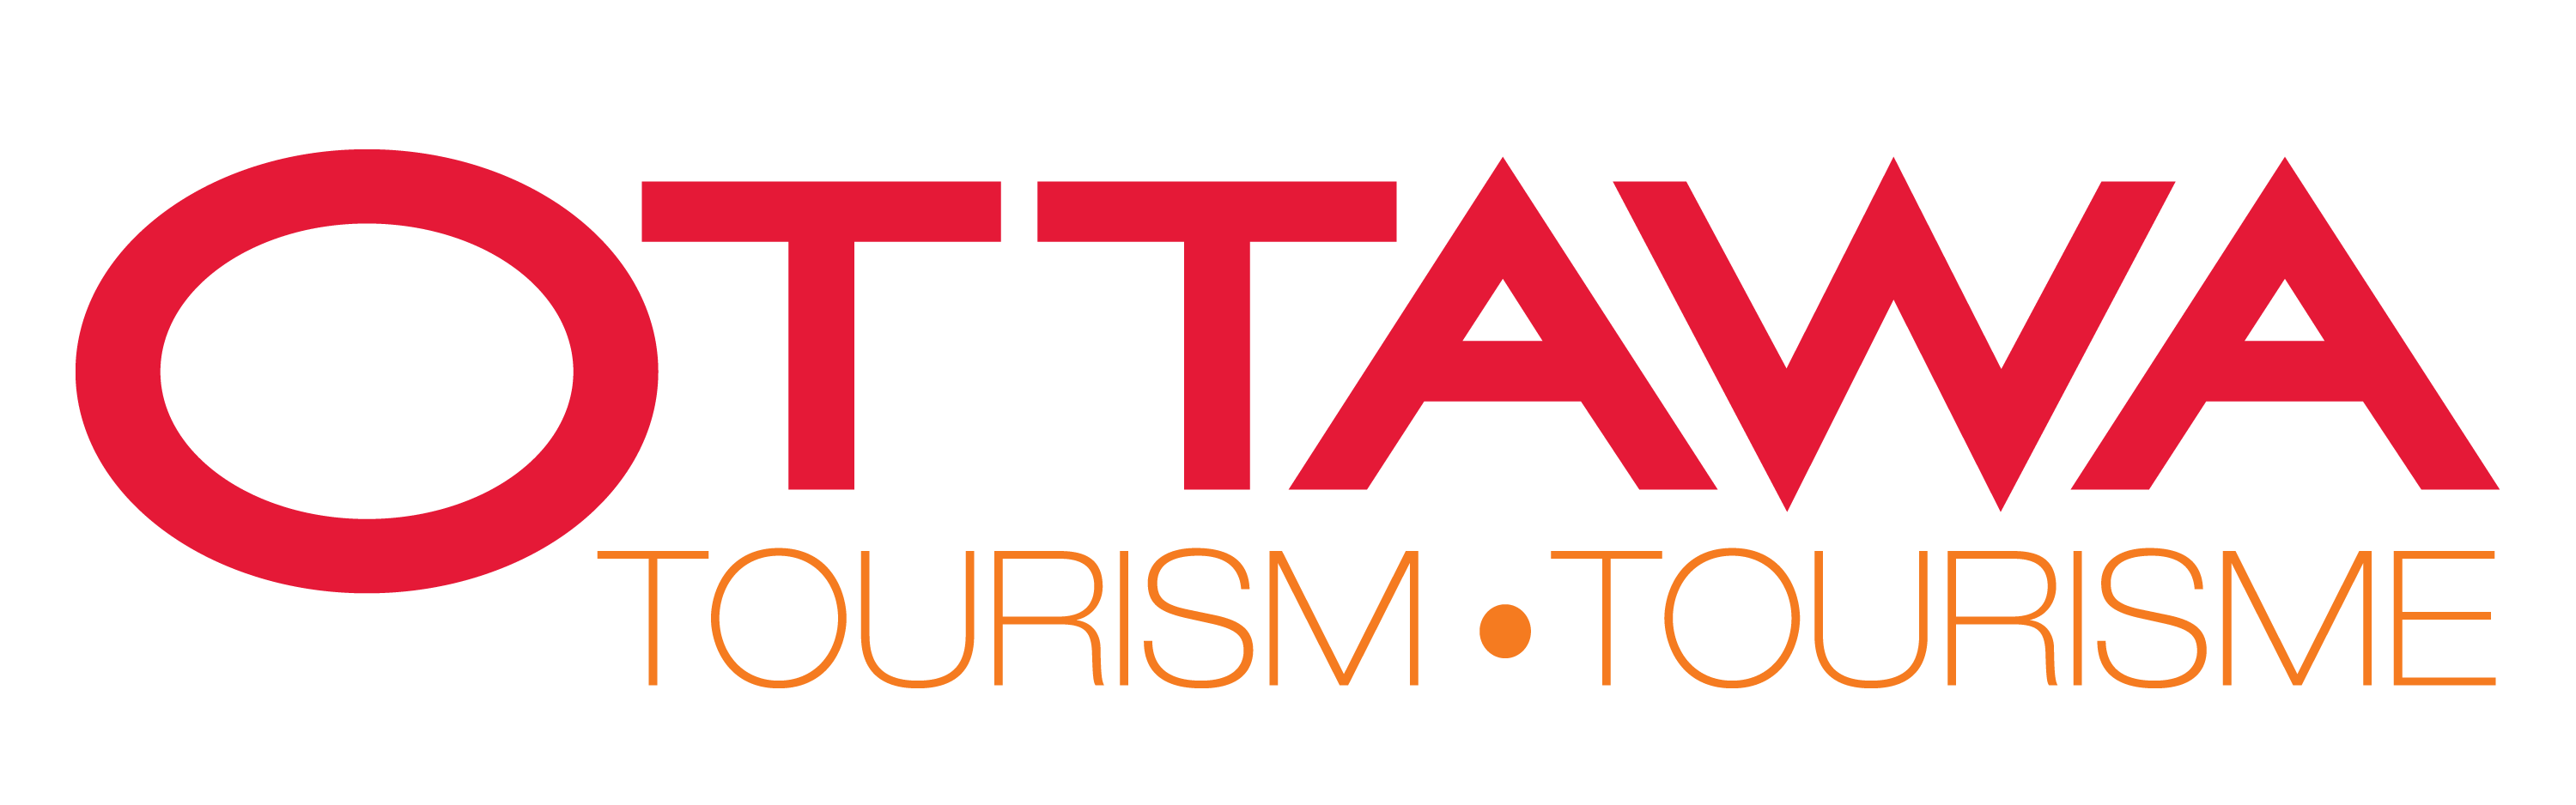 OTC_tourism_tourisme_colour